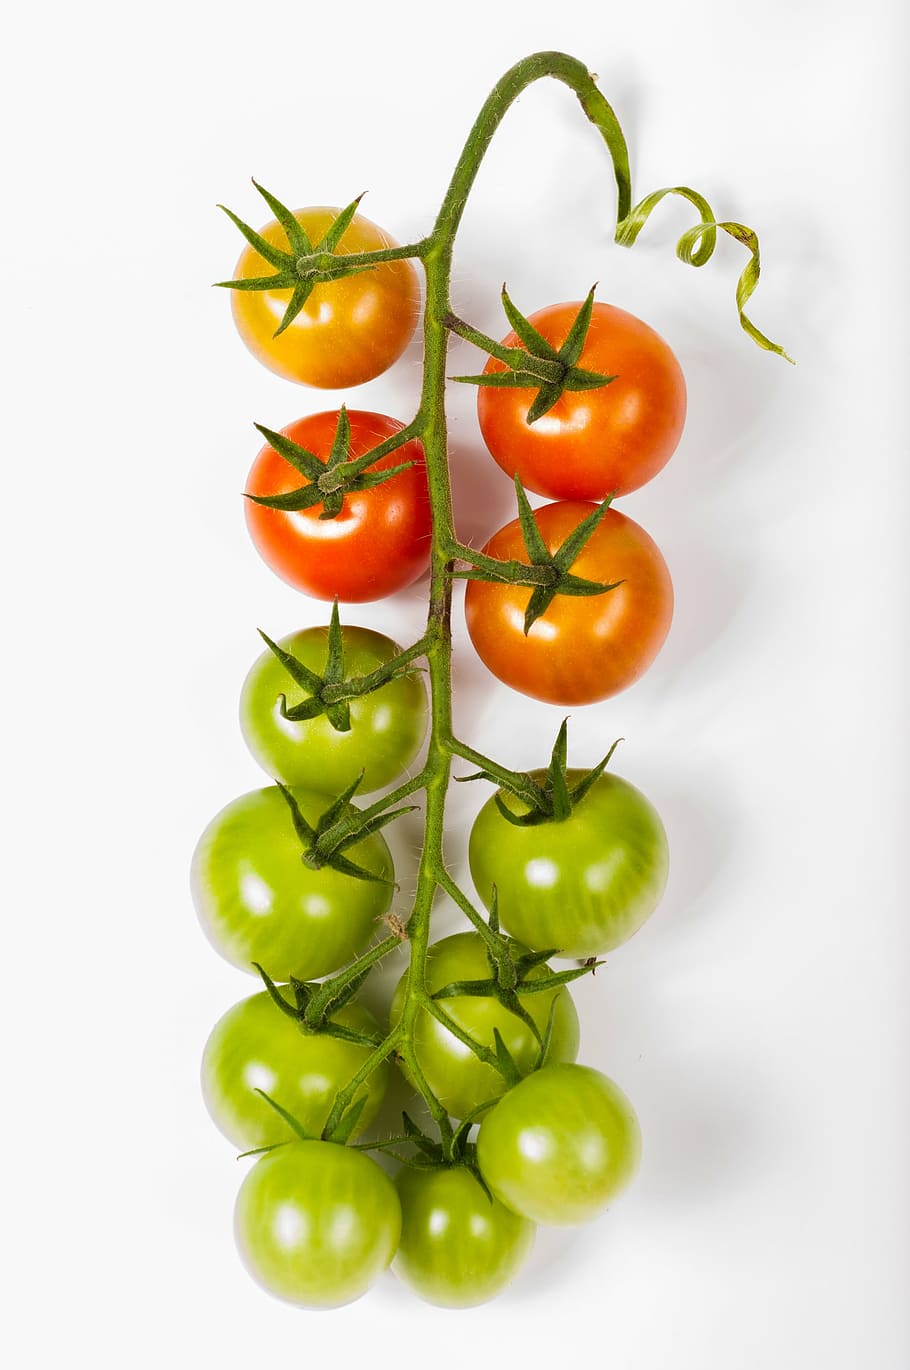 vermelho, verde, tomate, cereja, cacho, isolado, comida, branco, fundo, vegetal